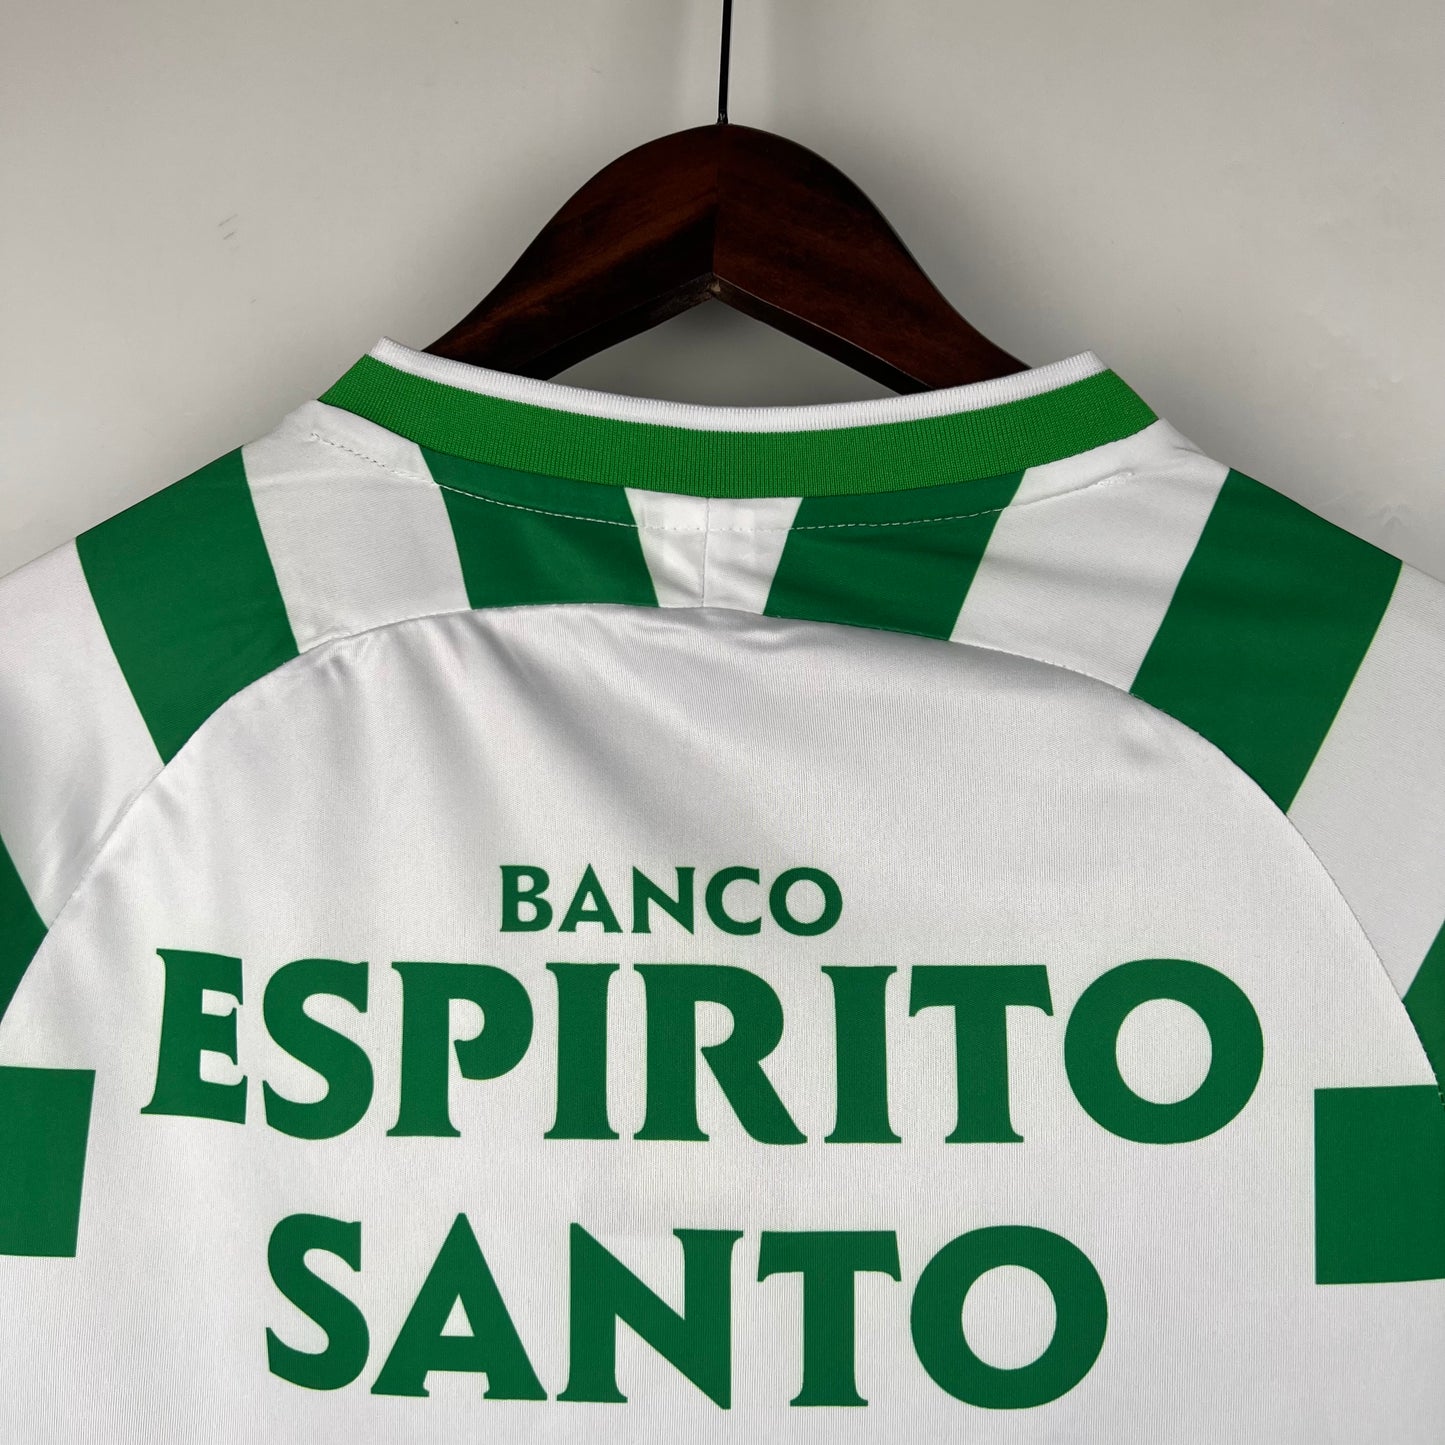 Camisa Retrô Sporting Home 2003/04